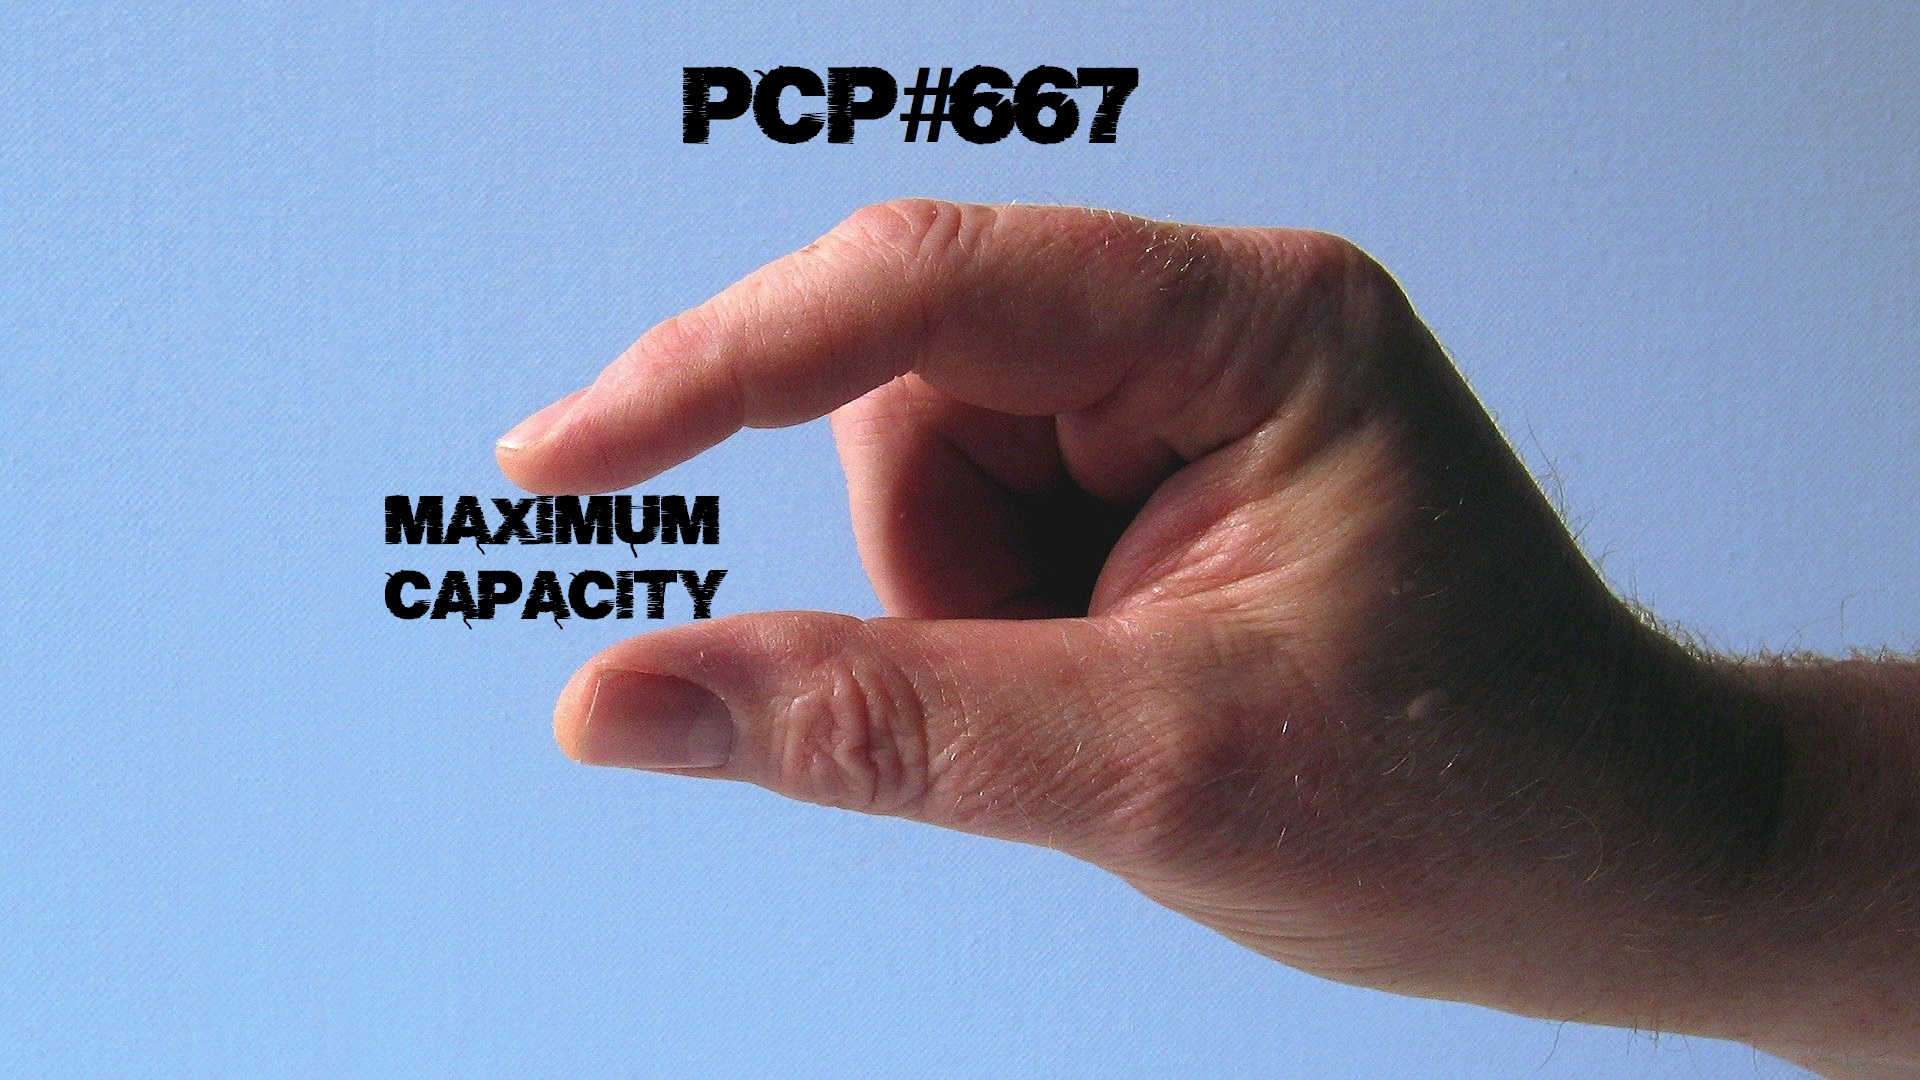 PCP#667… Maximum Capacity…